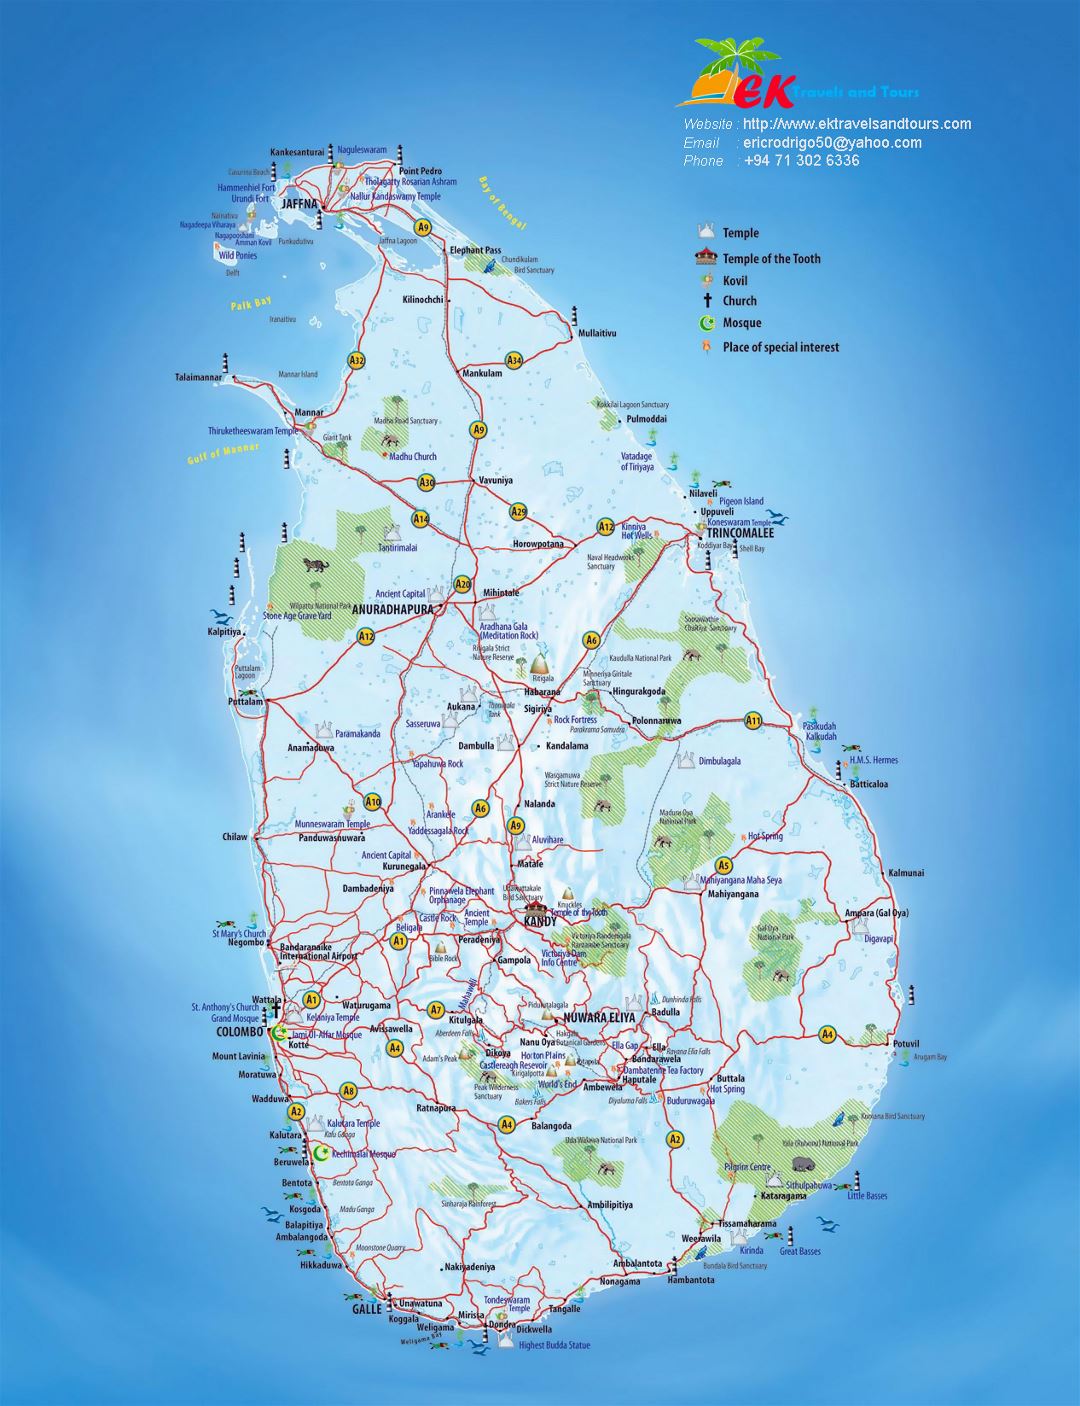 Grande mapa turístico de Sri Lanka con otras marcas